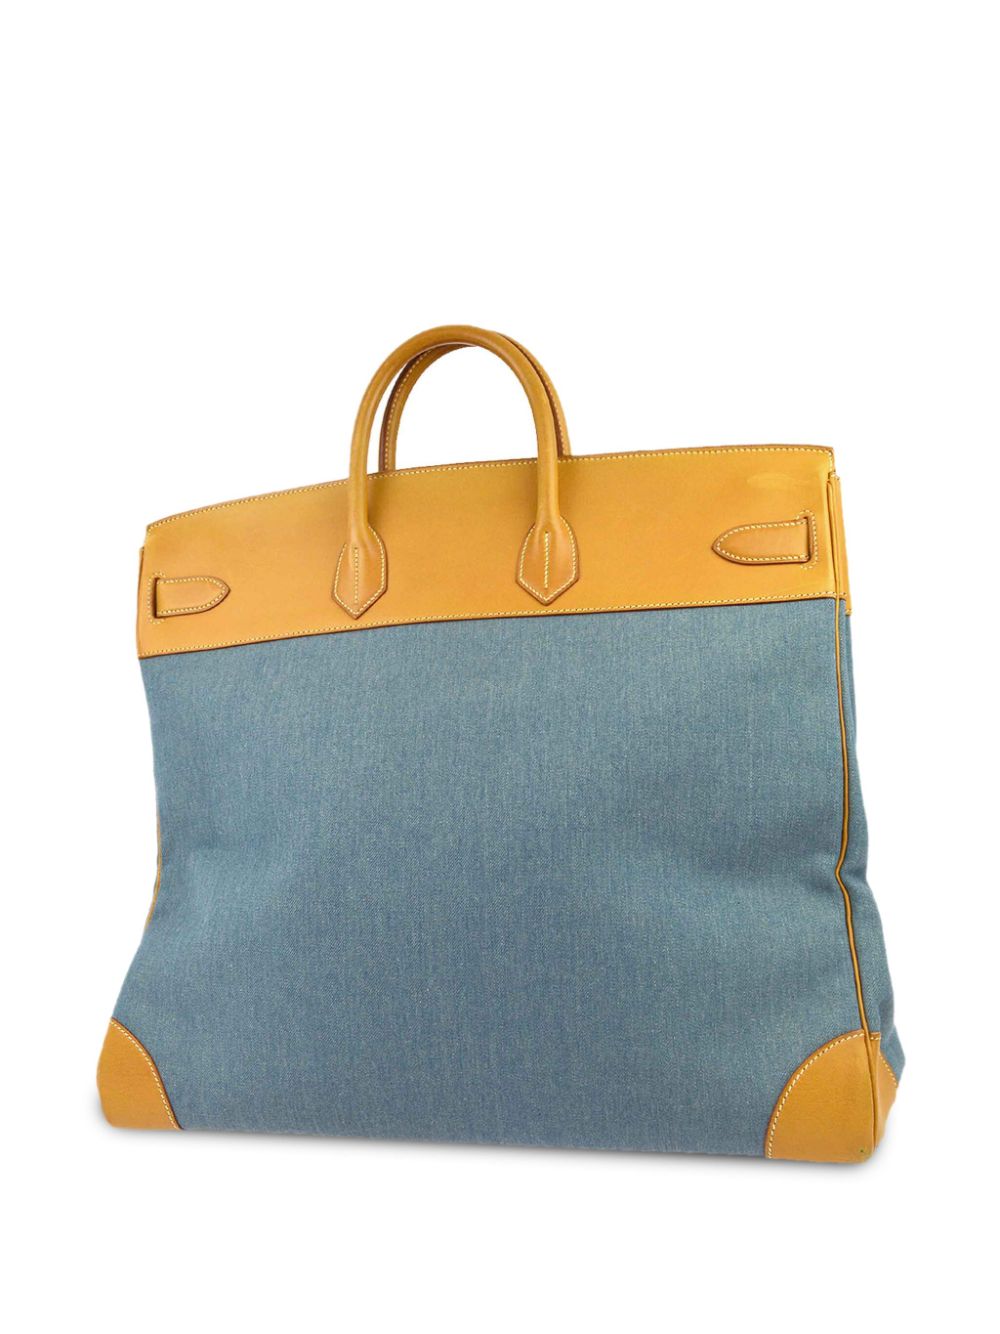 Hermès Pre-Owned 1998 Haut À Courroies denim handbag - Blauw